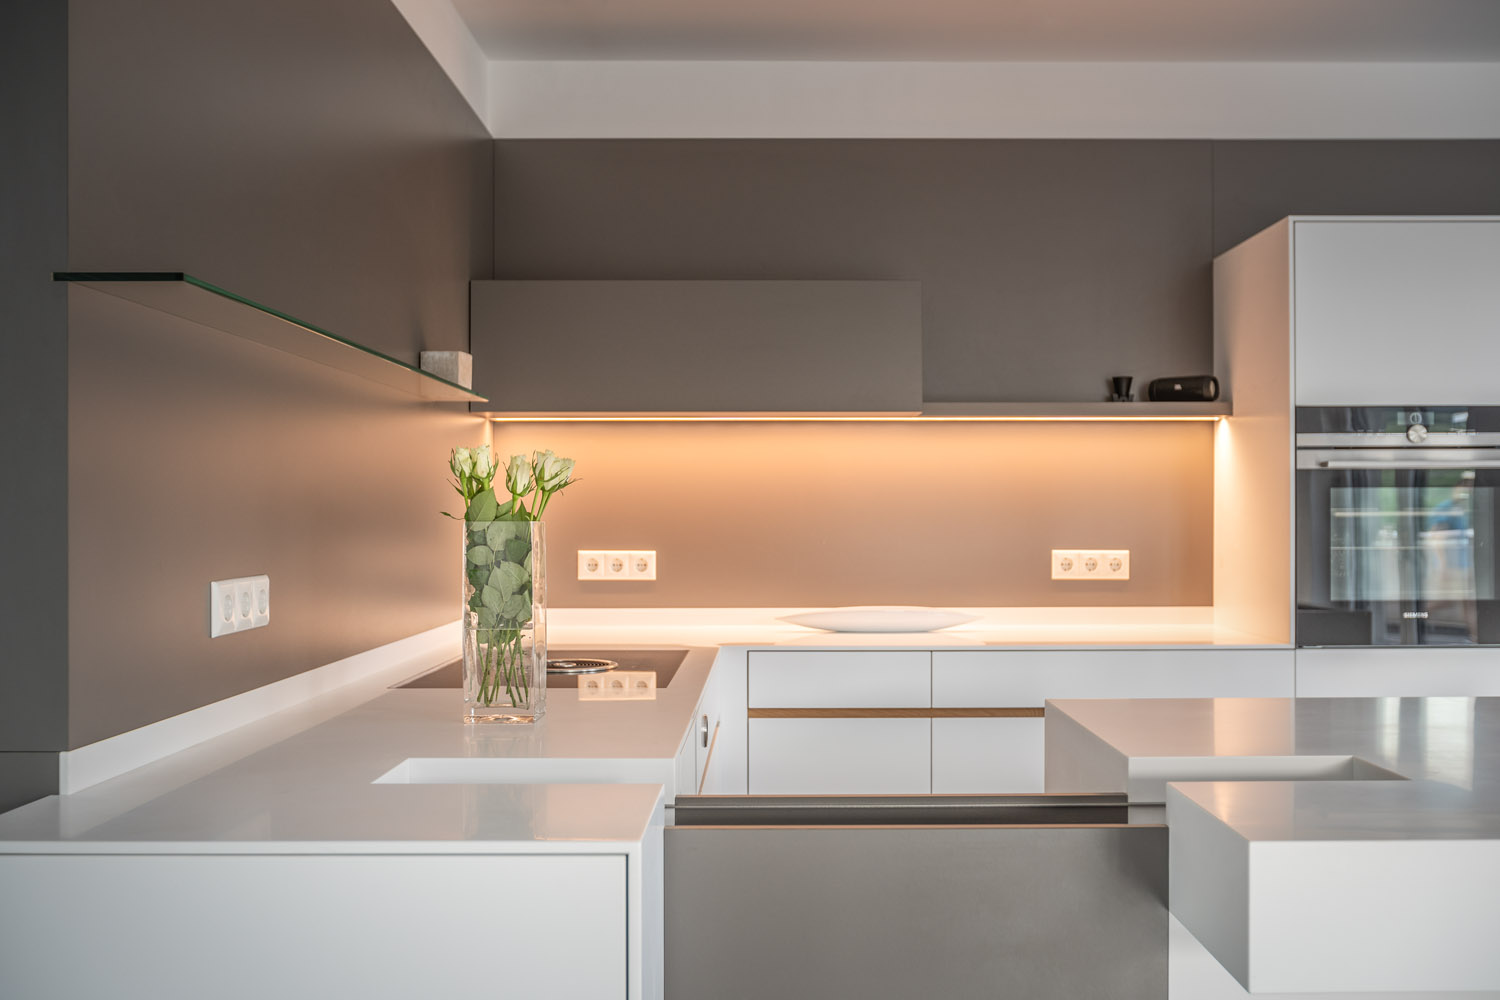 plan 3 kitchens / Architektova kuchyně Dipl. Norbert Krähling / Kompaktní kuchyně s ostrůvkem